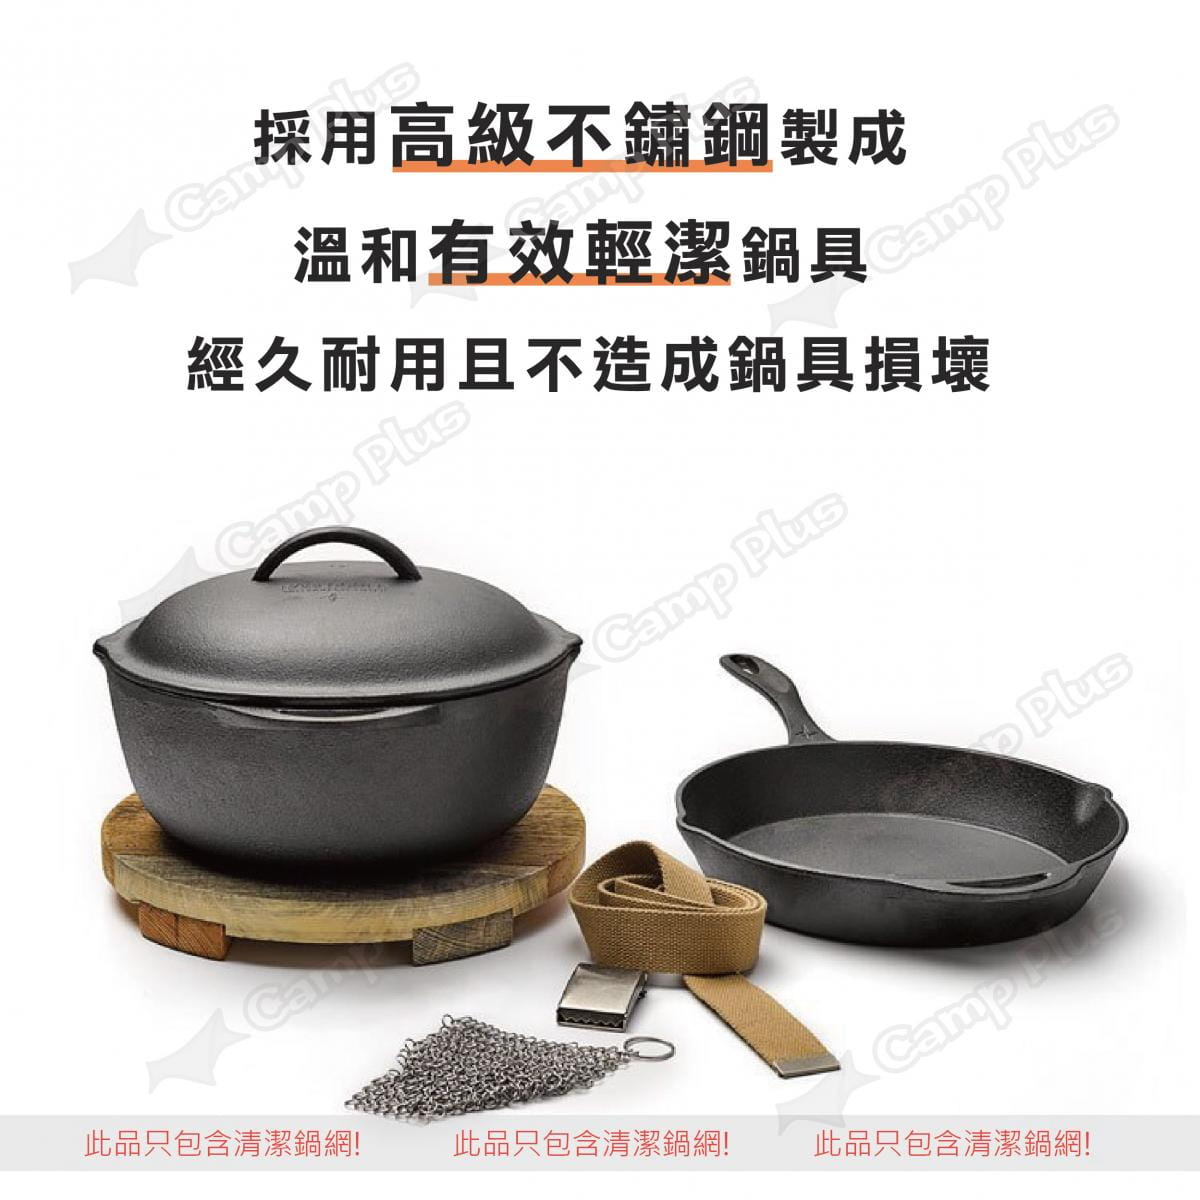 【Barebones】鑄鐵荷蘭鍋清潔鍋網 (悠遊戶外) 1